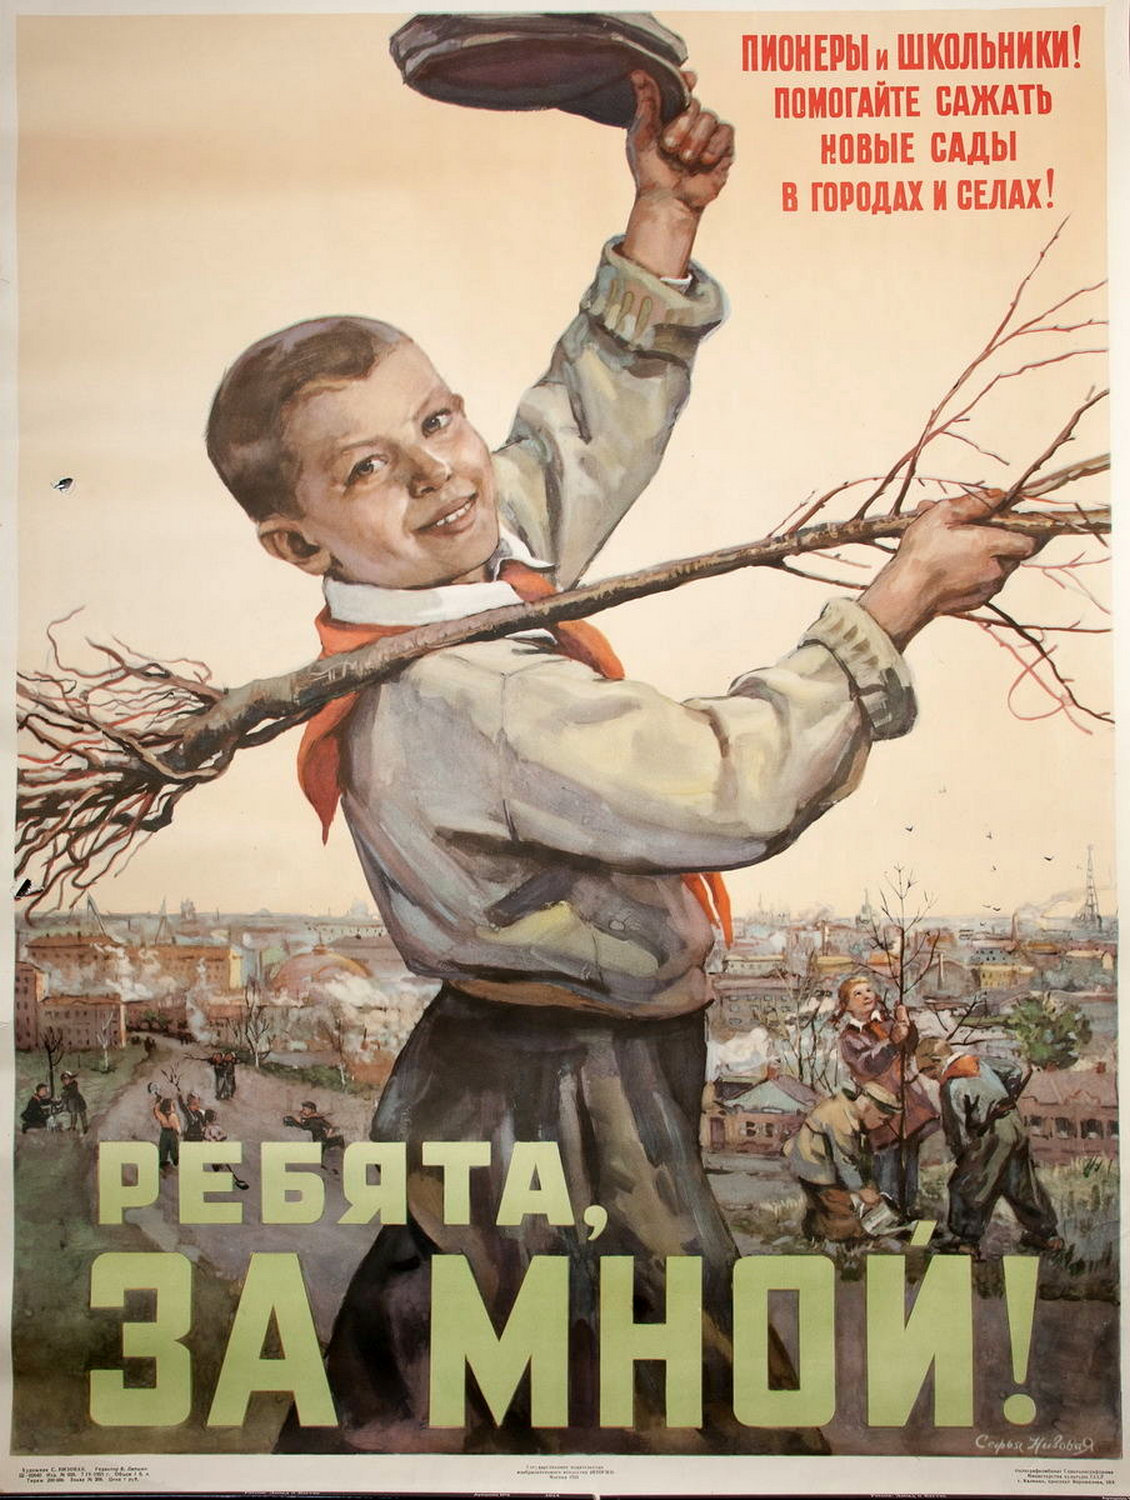 Плакат о детском труде в Советском Союзе, 1955 год. Надпись: «Пионеры и школьники! Помогайте сажать новые сады в городах и сёлах! Ребята, за мной!»